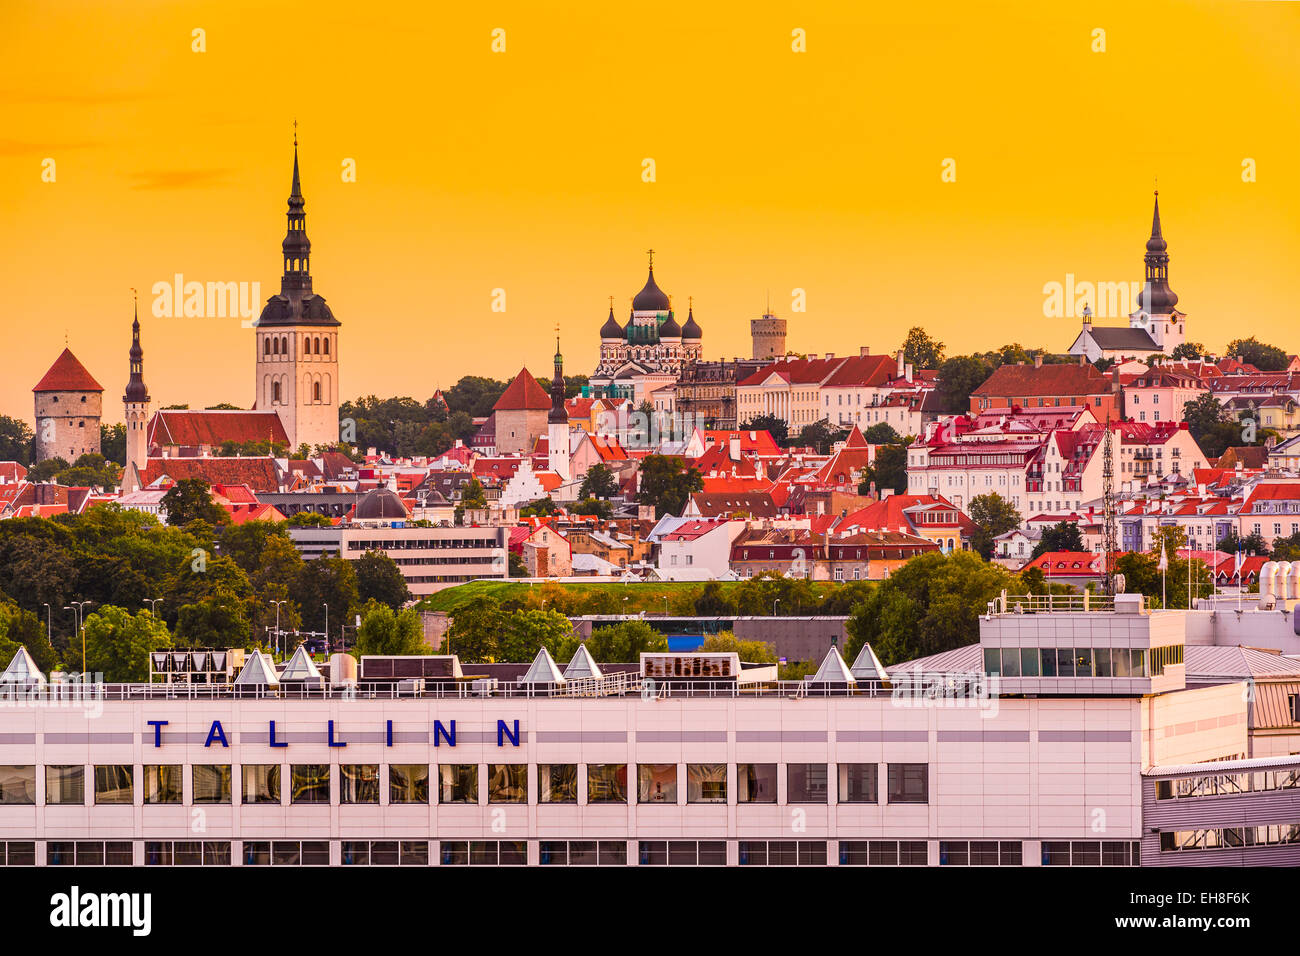 Tallinn, Estonia skyline from the port. Stock Photo